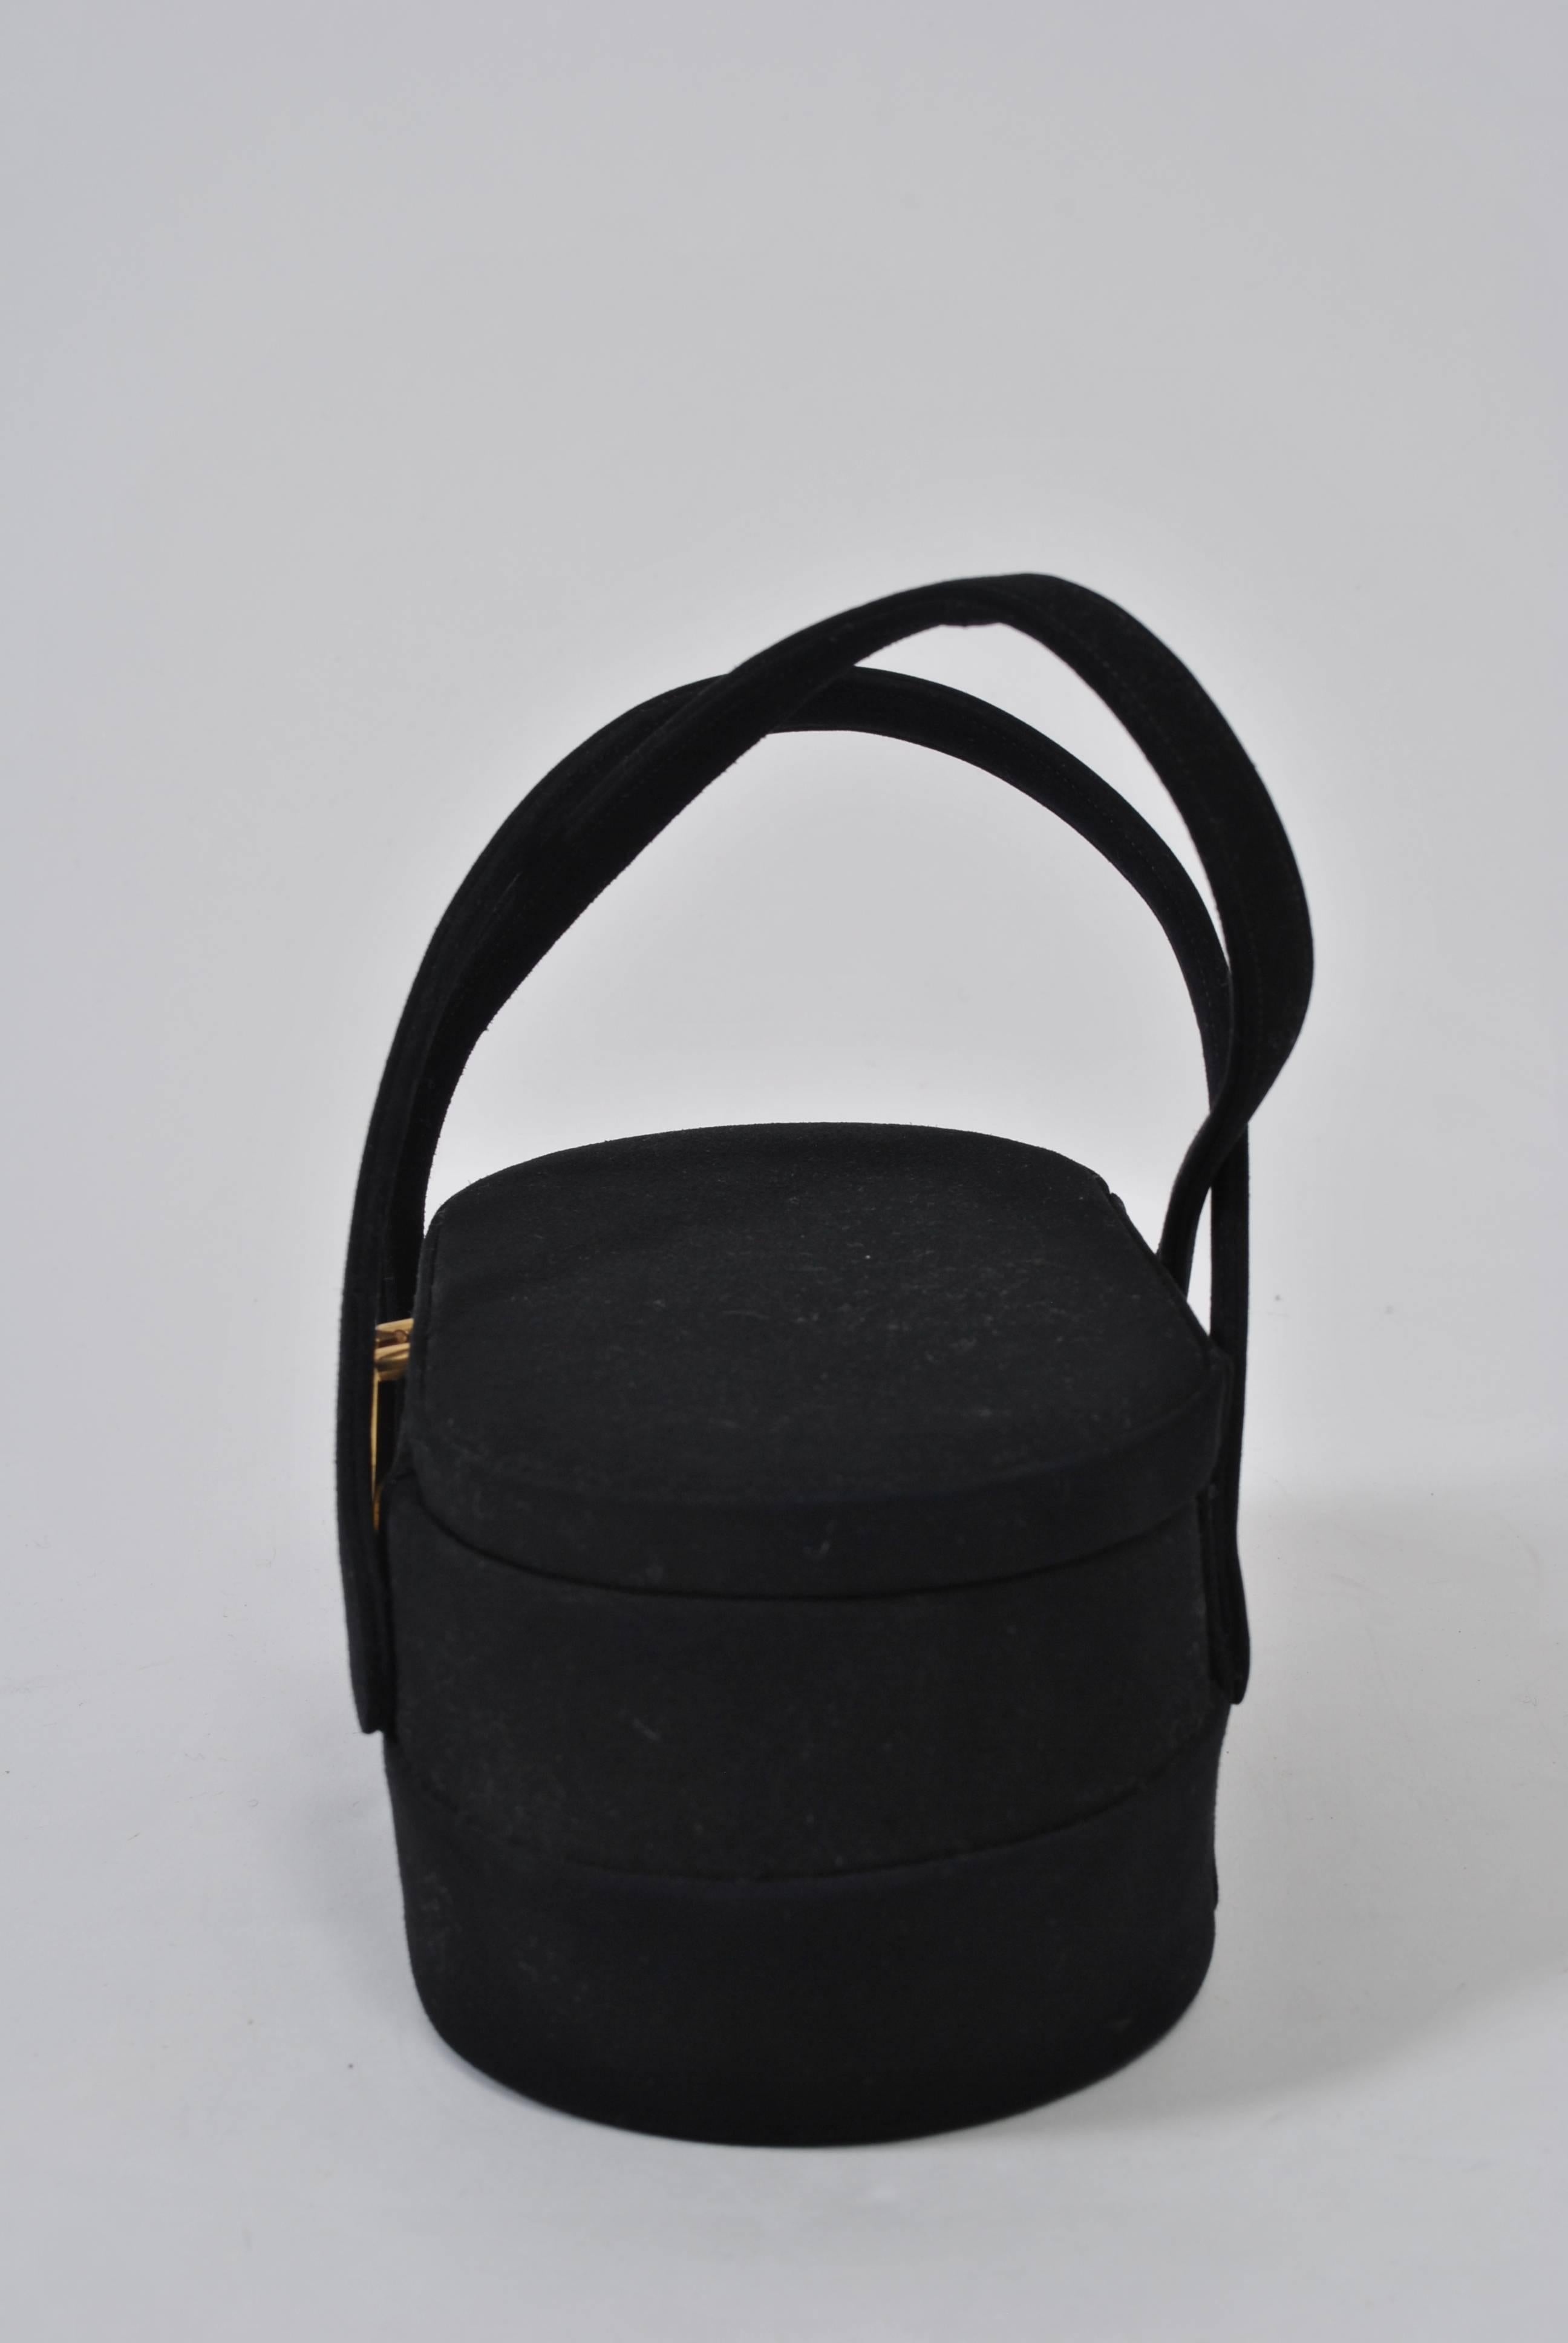 Les sacs à main en forme de boîte étaient extrêmement populaires dans les années 1950 et 1960 et leur style unique est évident dans cet exemple de Coblentz. En daim noir, le sac a une forme ovale qui est plus large à la taille, porte deux poignées